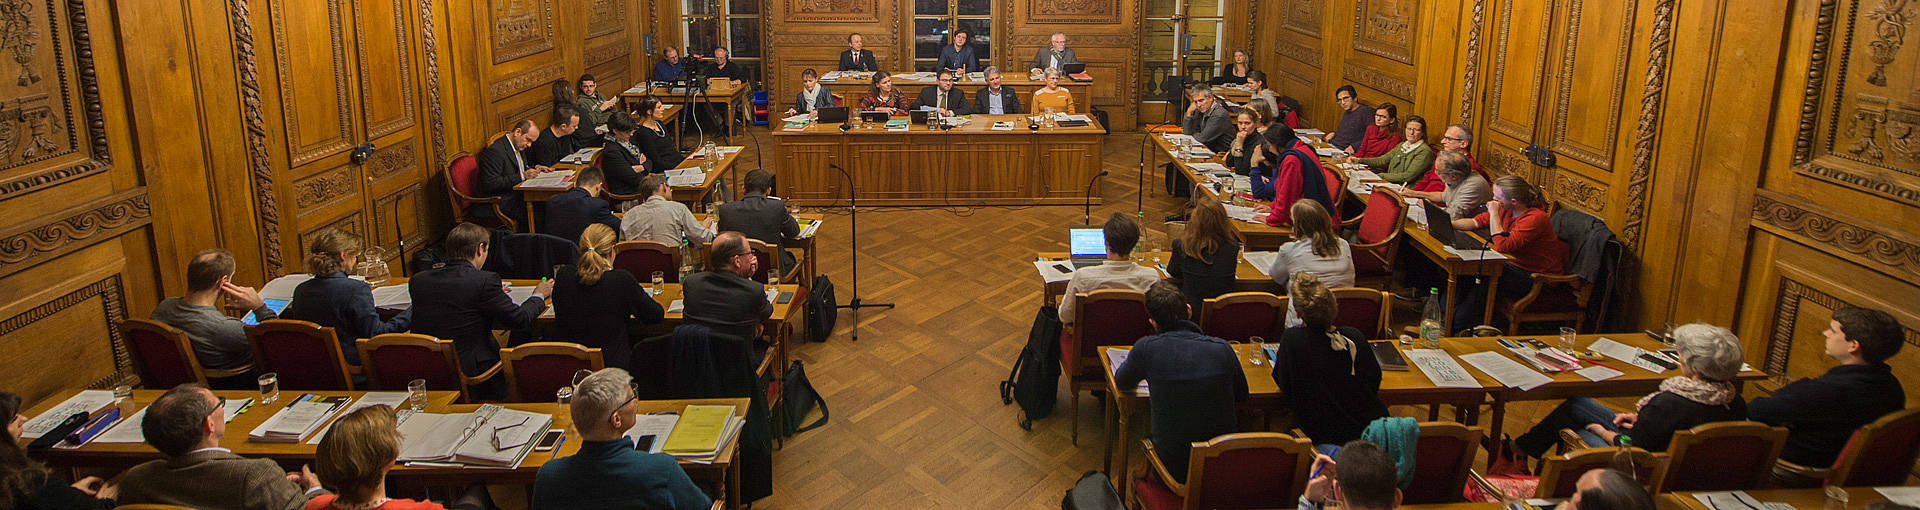 Le Conseil général lors d'une séance de janvier 2018